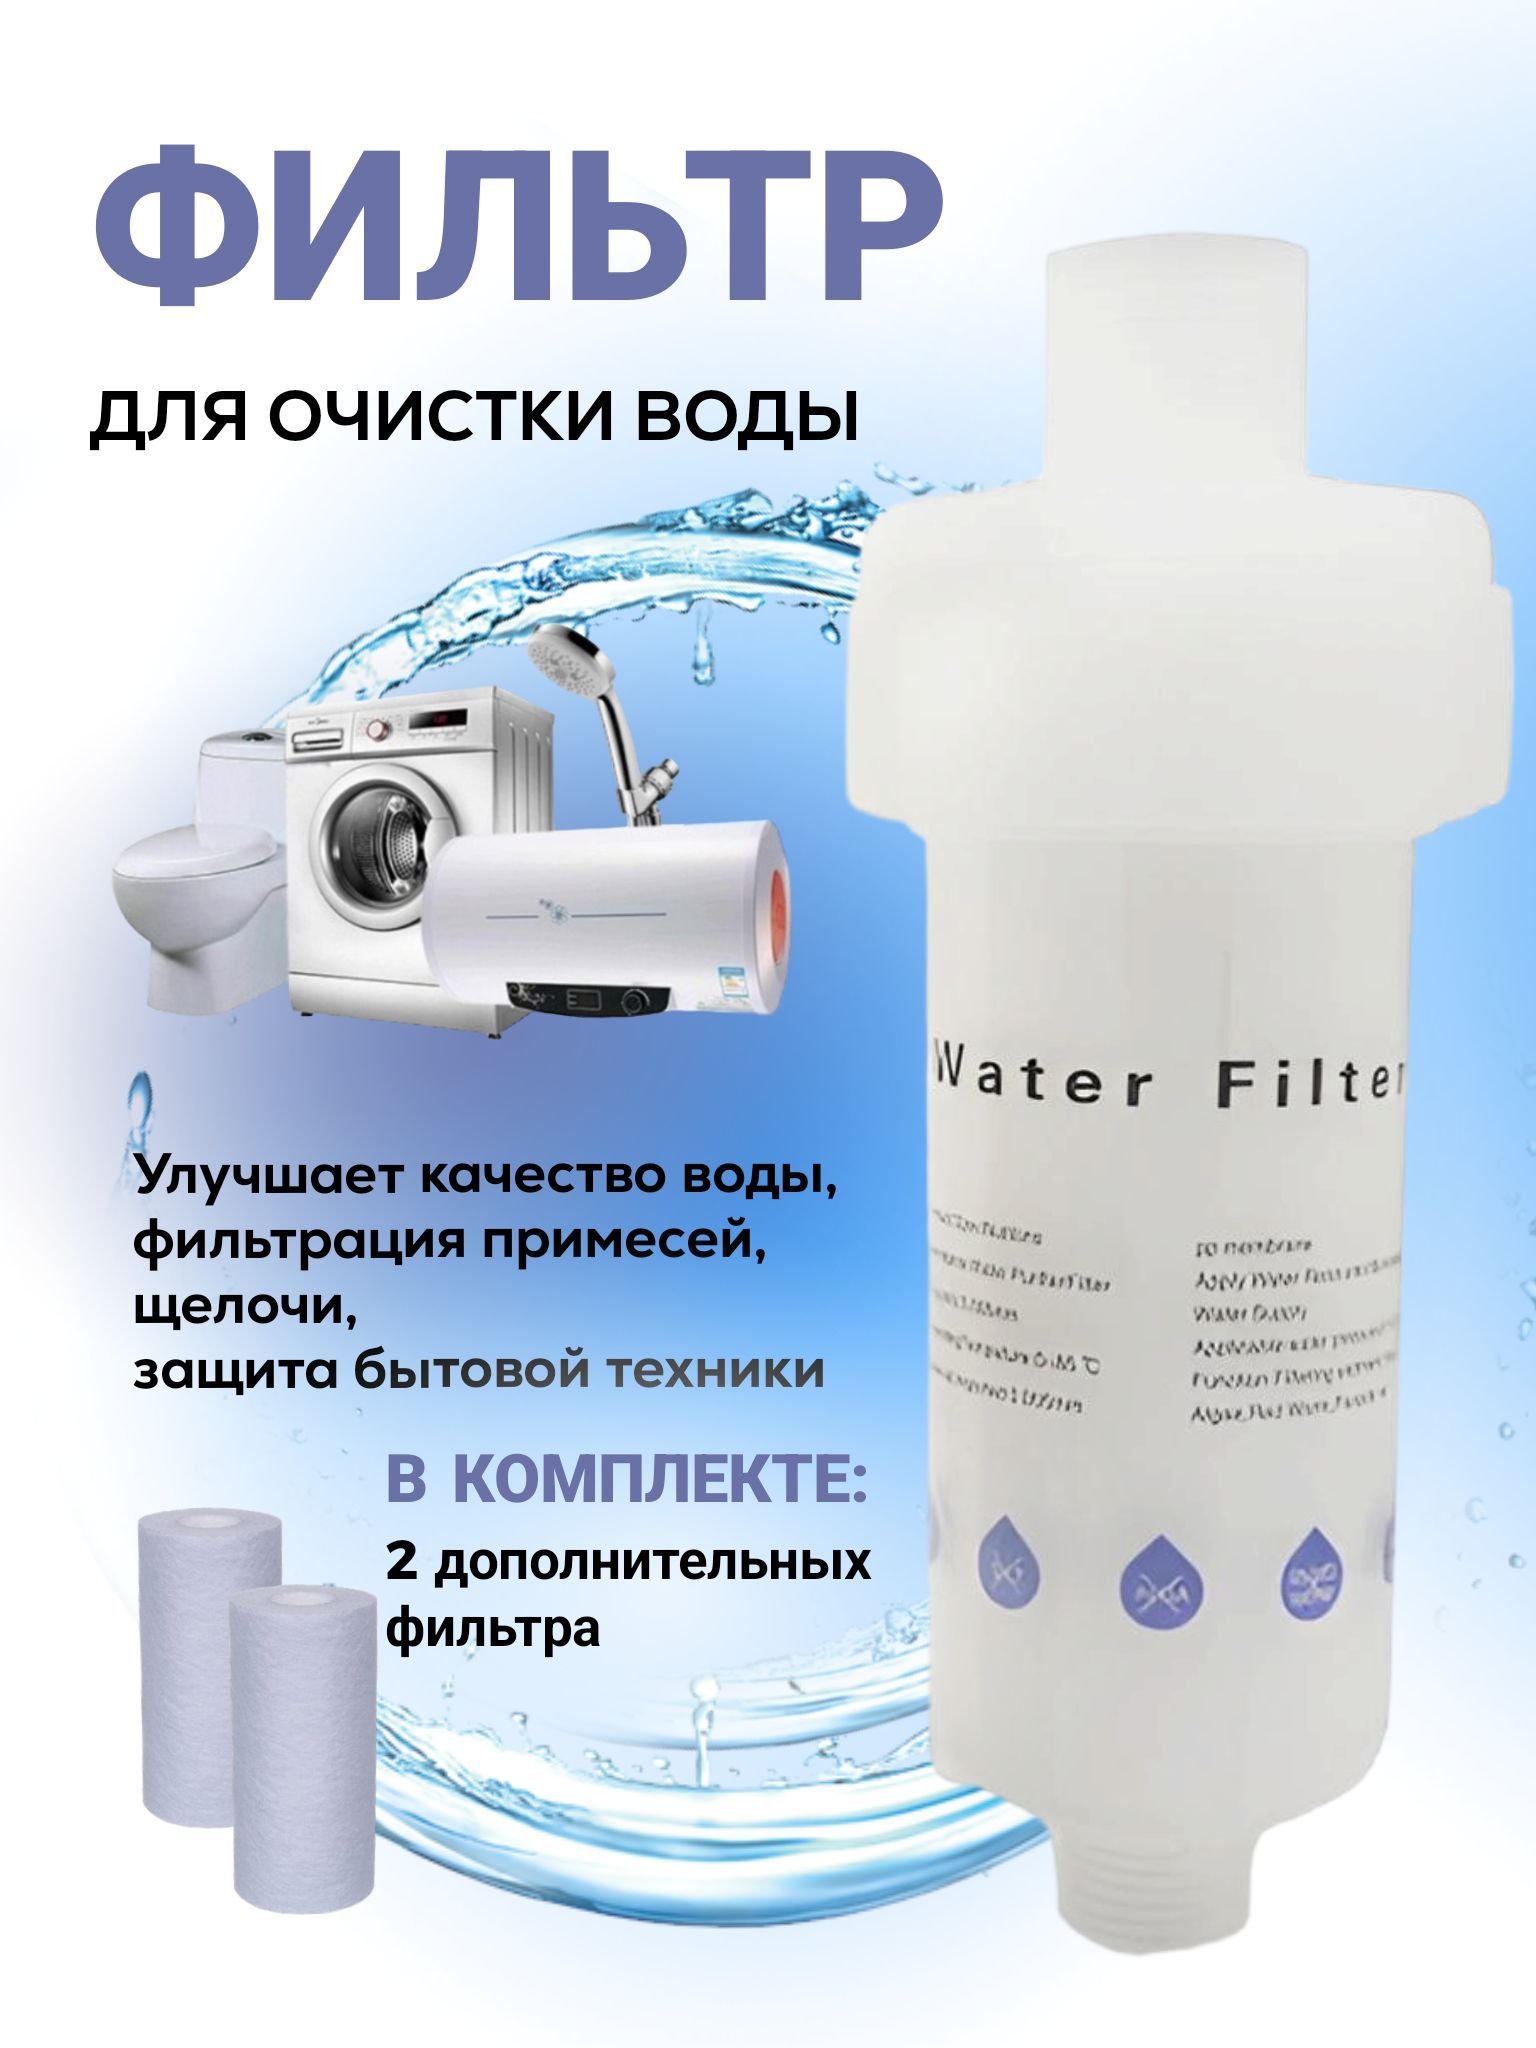 Фильтр для воды аурус отзывы. Фильтр для воды домашний. Фильтр водяной комплект. Горизонтальный фильтр для воды. Фильтр для воды белый.